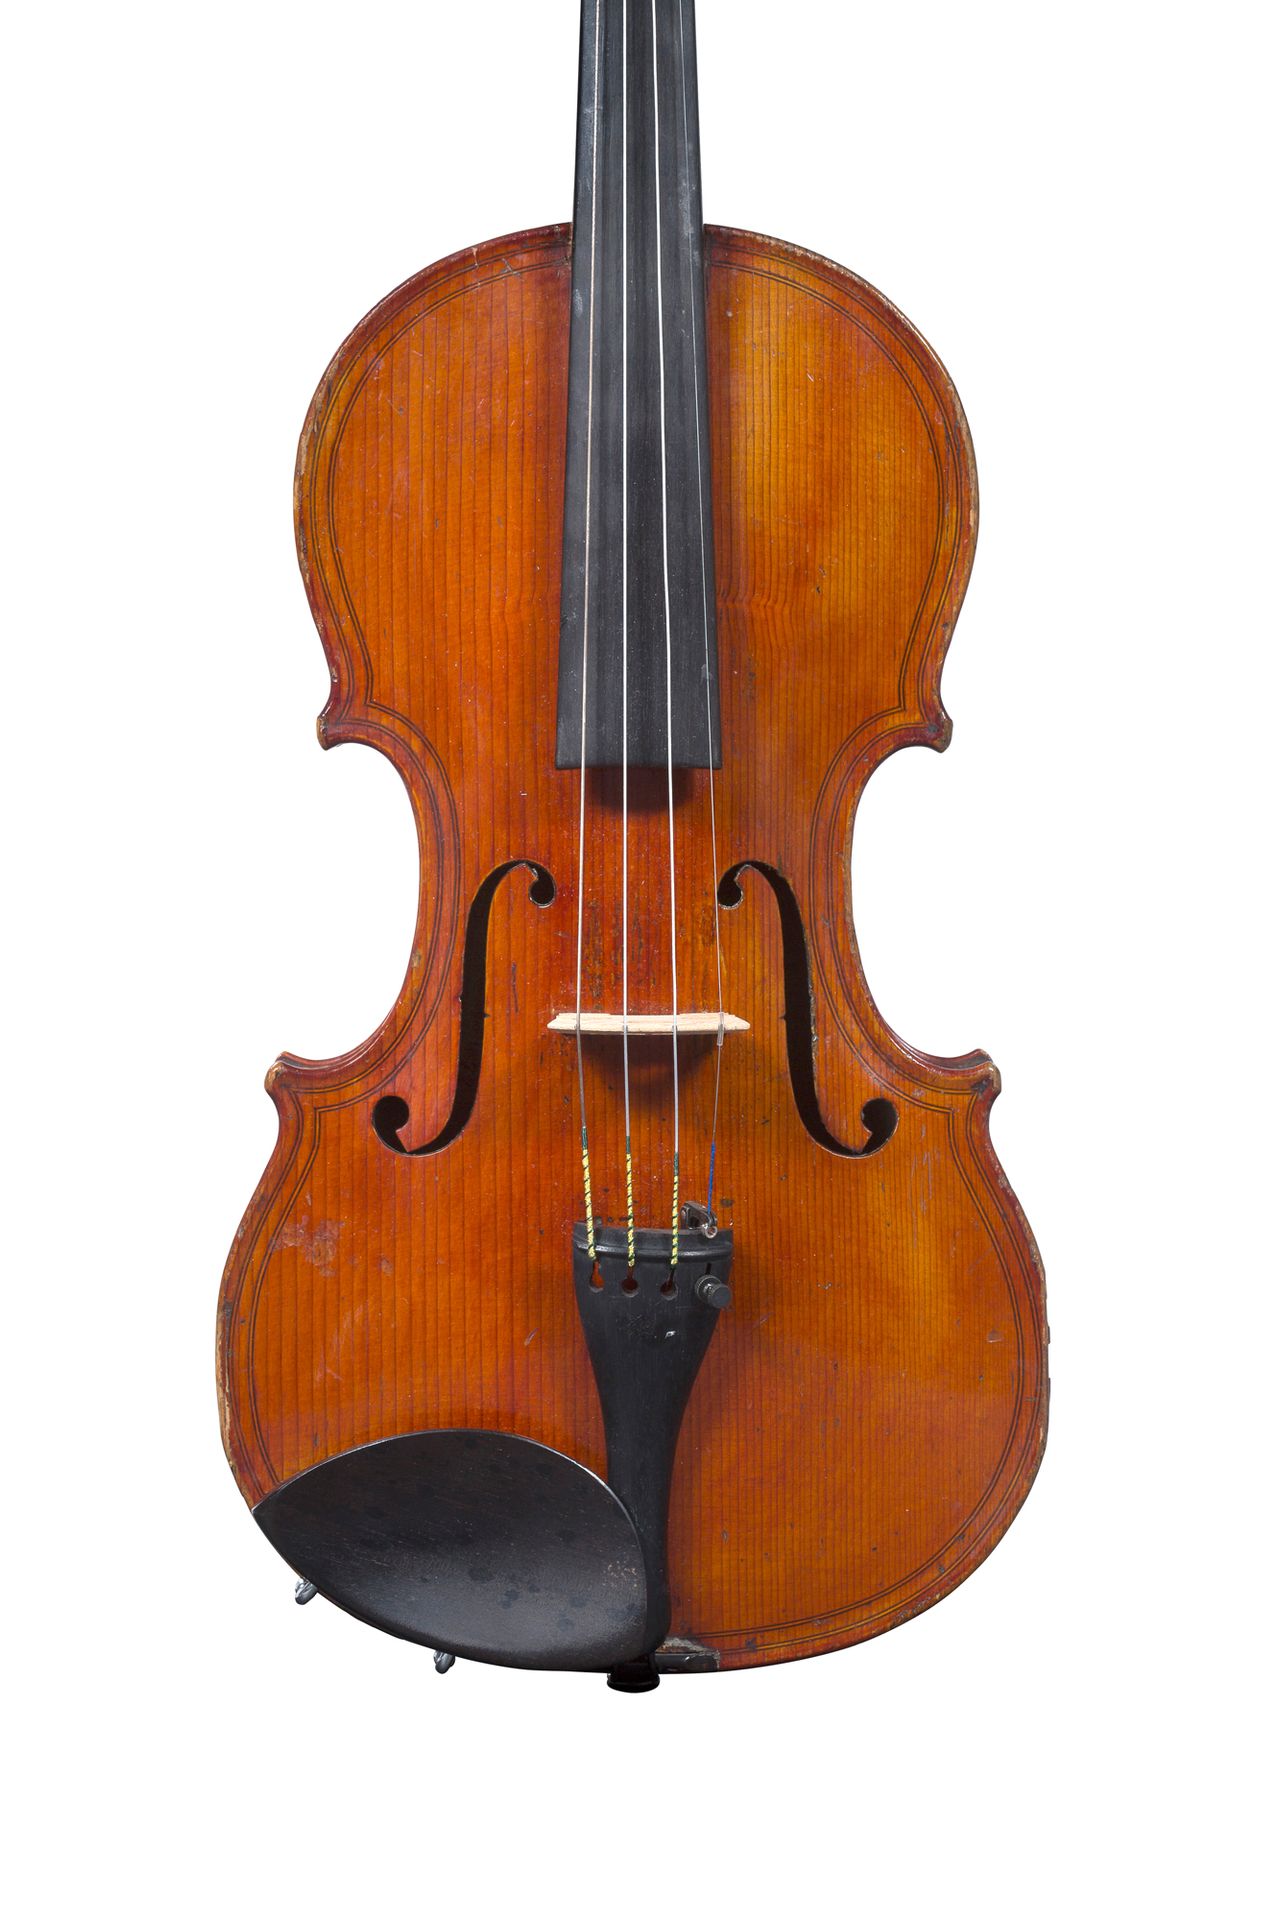 Null Violín de Nicolas Mauchand
Fabricado en Mirecourt hacia 1820-30
Modelo de d&hellip;